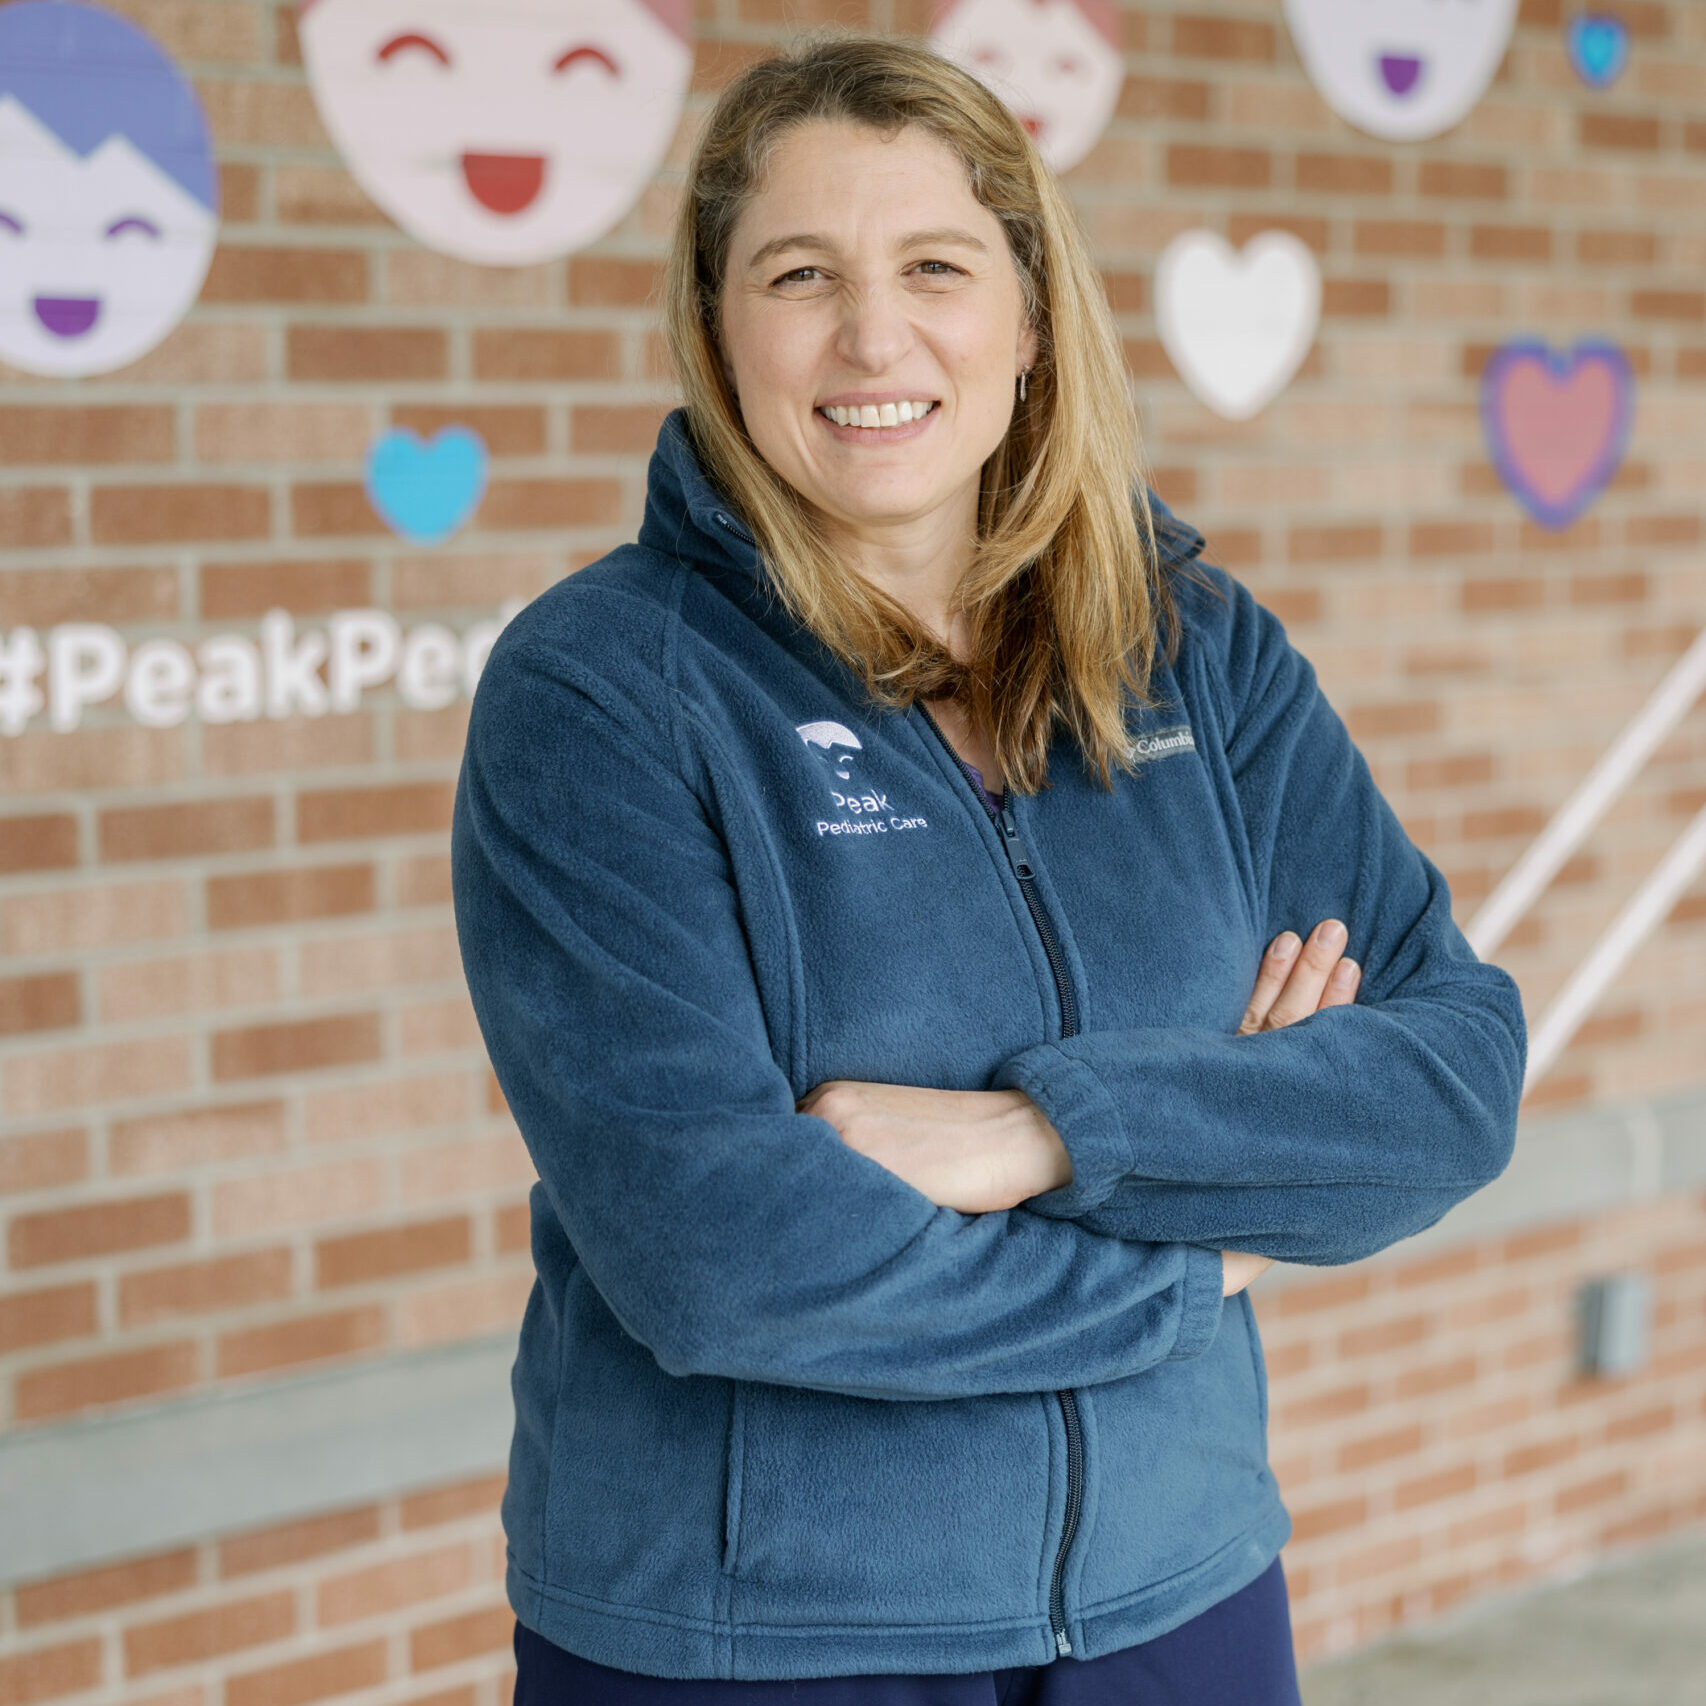 Dr. Katie Hansen at Peak Pediatric Care